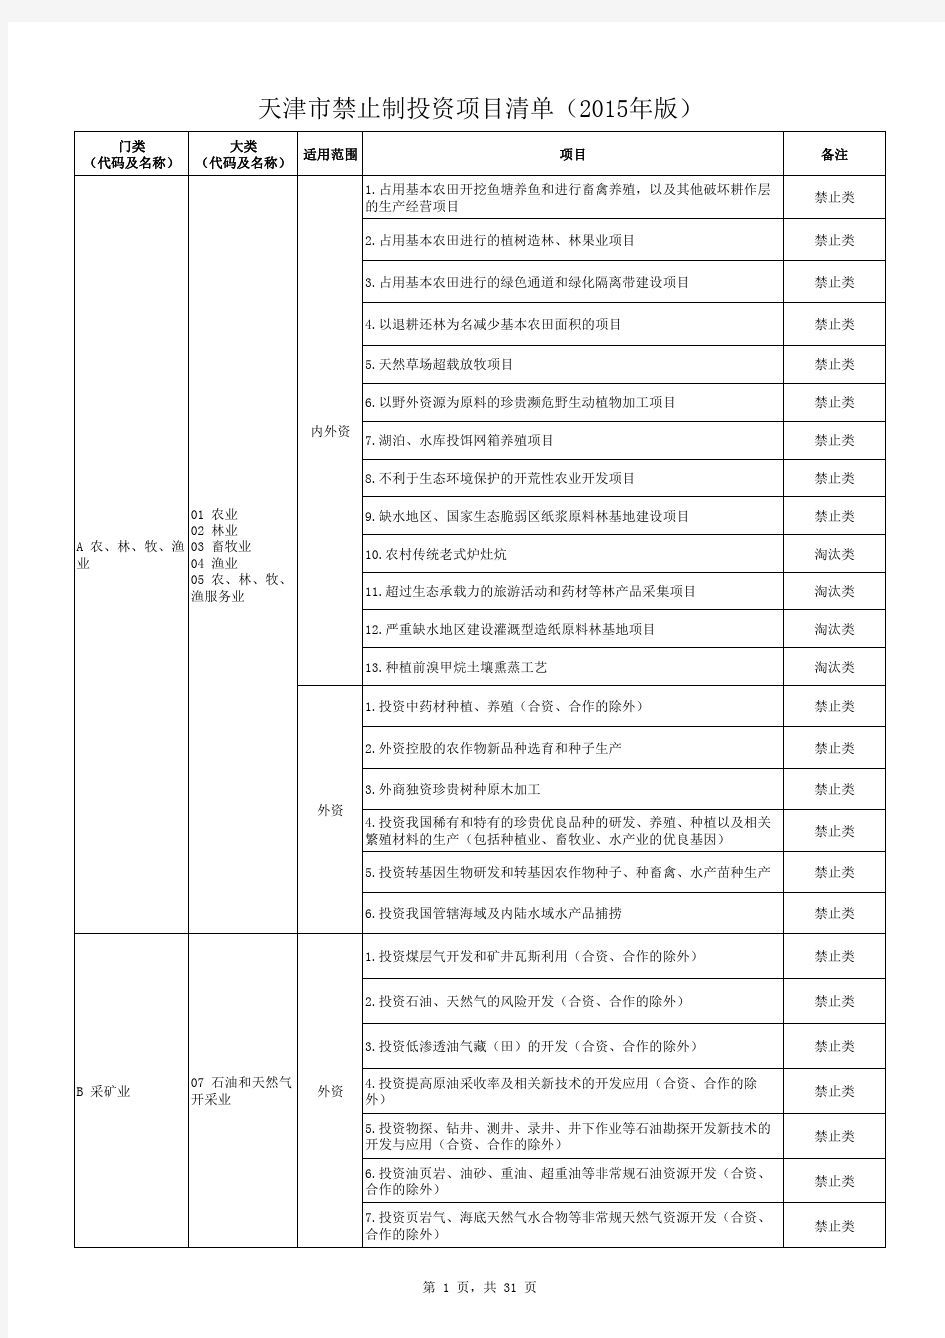 天津市禁止制投资项目清单(2015年版)